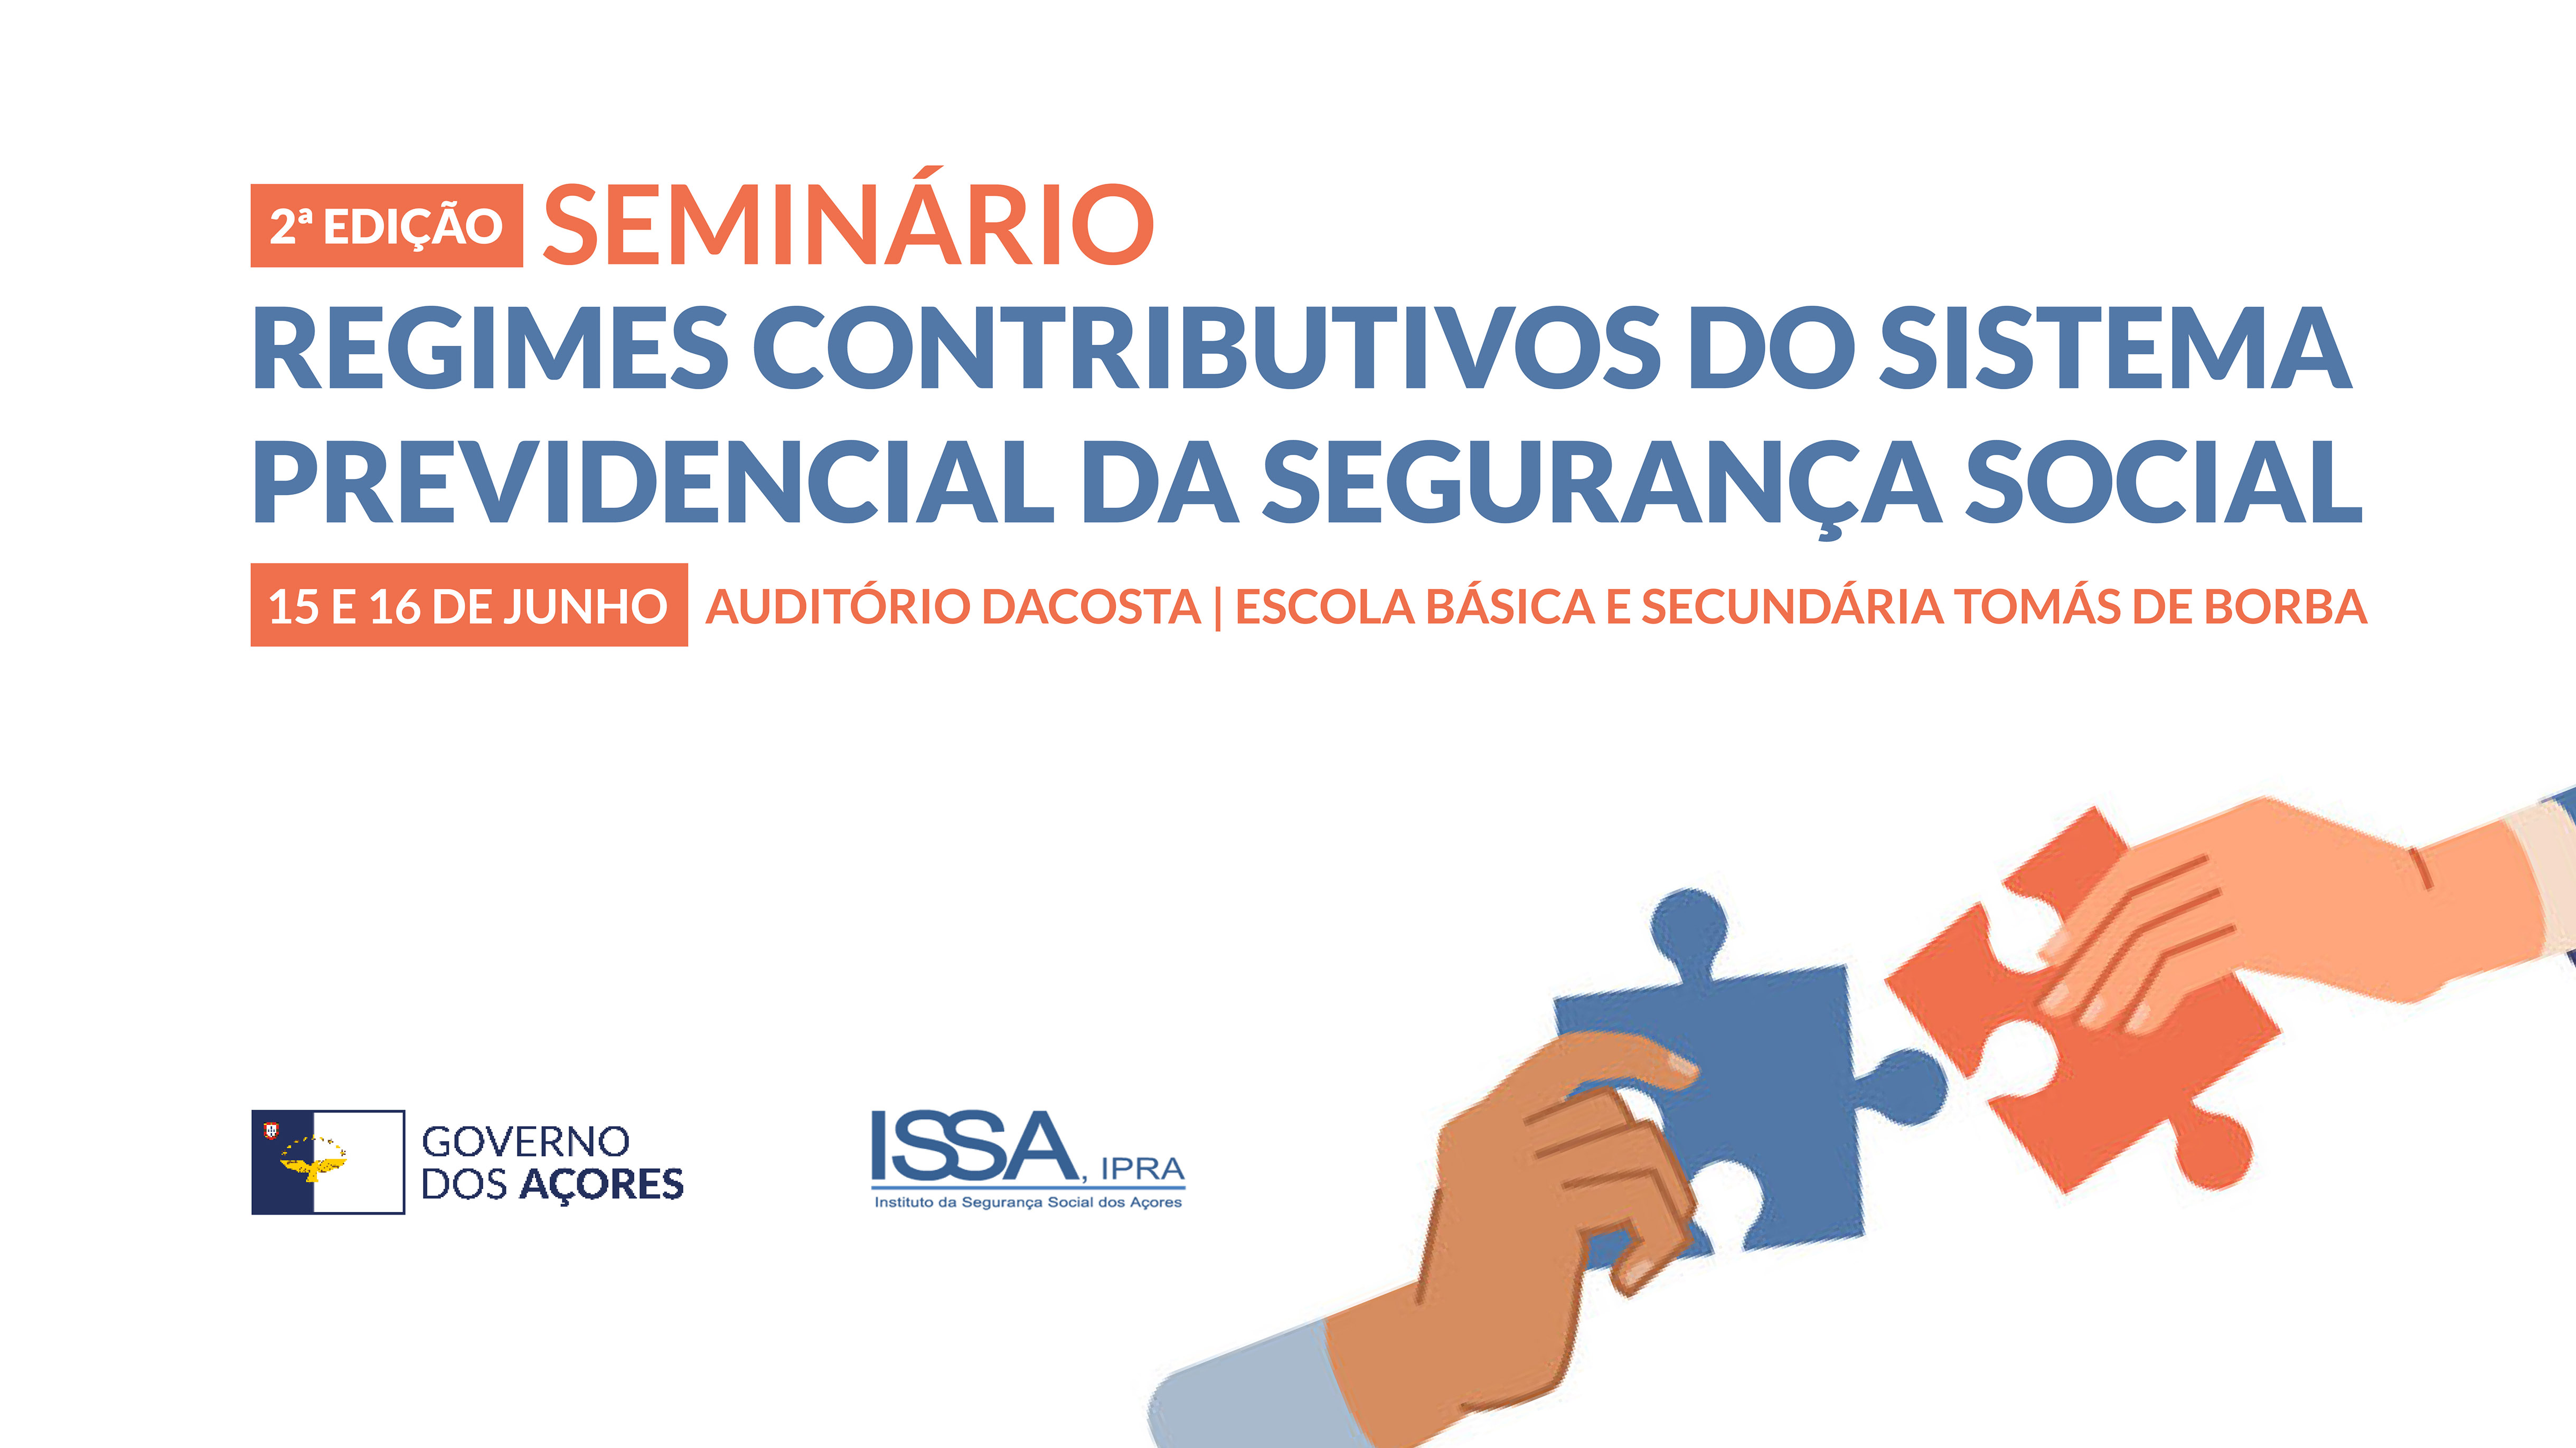 Seminário “Regimes Contributivos do Sistema Previdencial da Segurança Social”